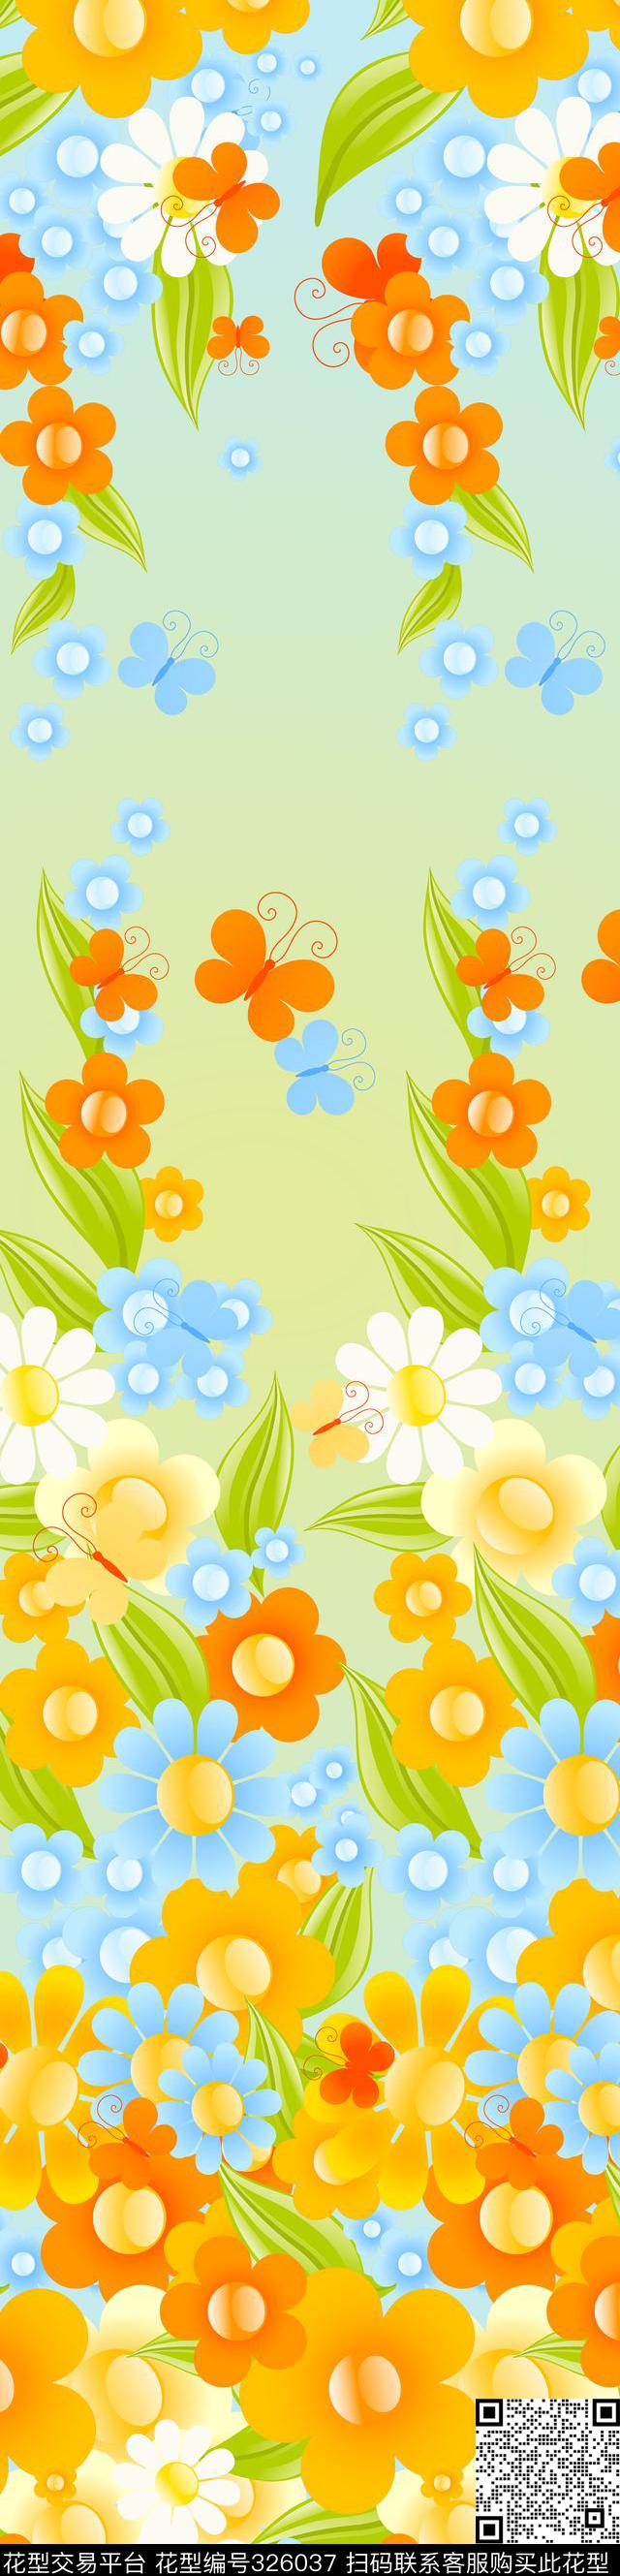 金灿灿的太阳花Yp0060.jpg - 326037 - 家纺 - 传统印花花型 － 床品花型设计 － 瓦栏